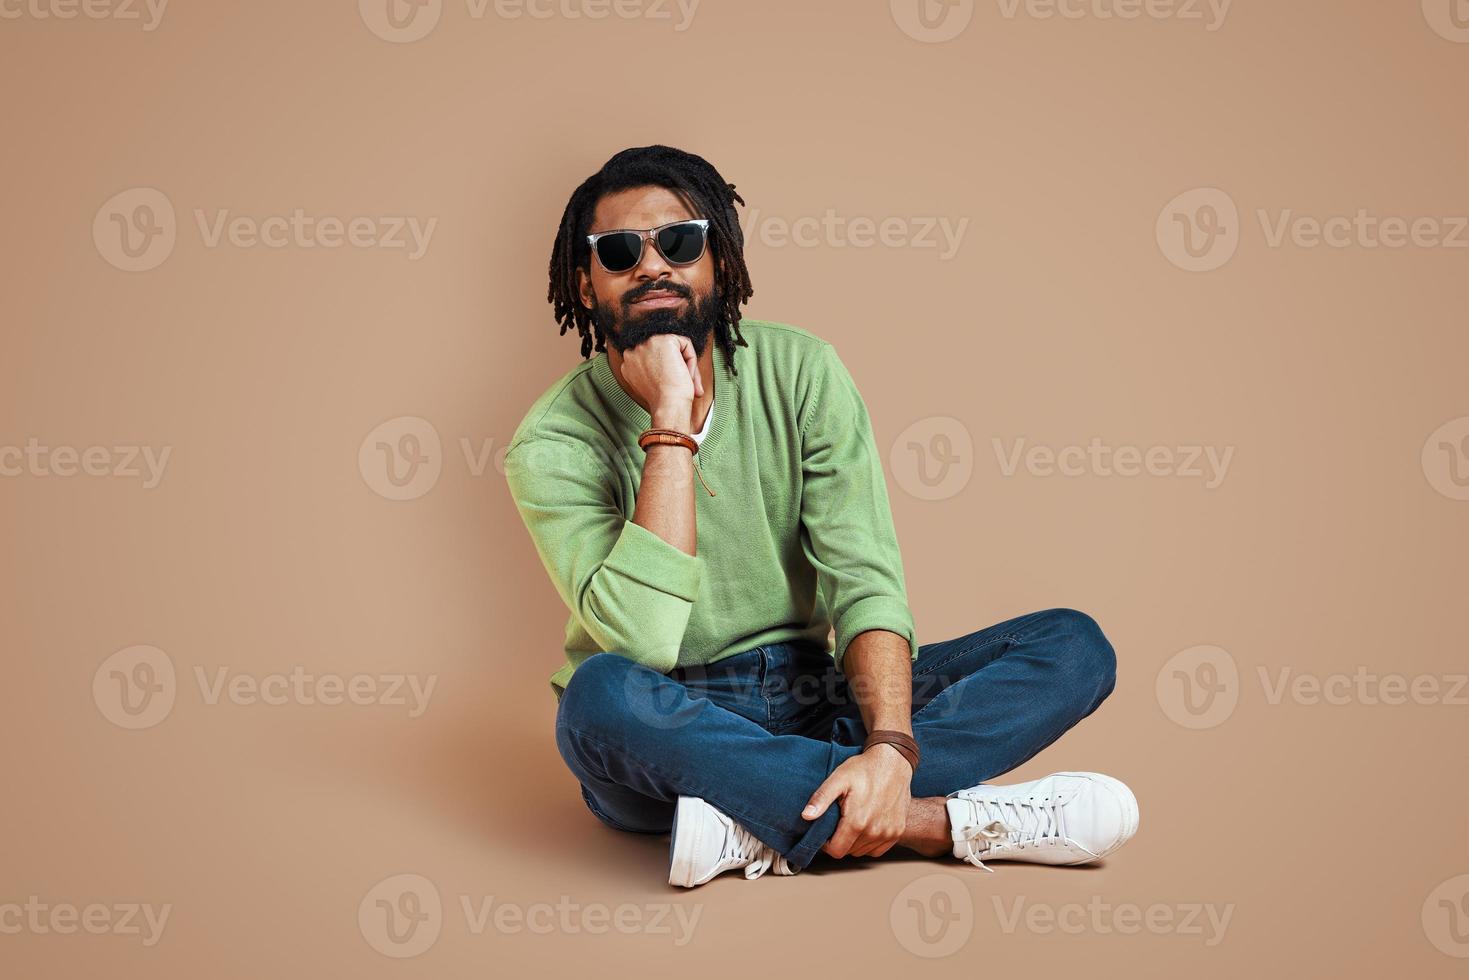 joven africano de moda con ropa informal mirando la cámara y sonriendo mientras se sienta en un fondo marrón foto